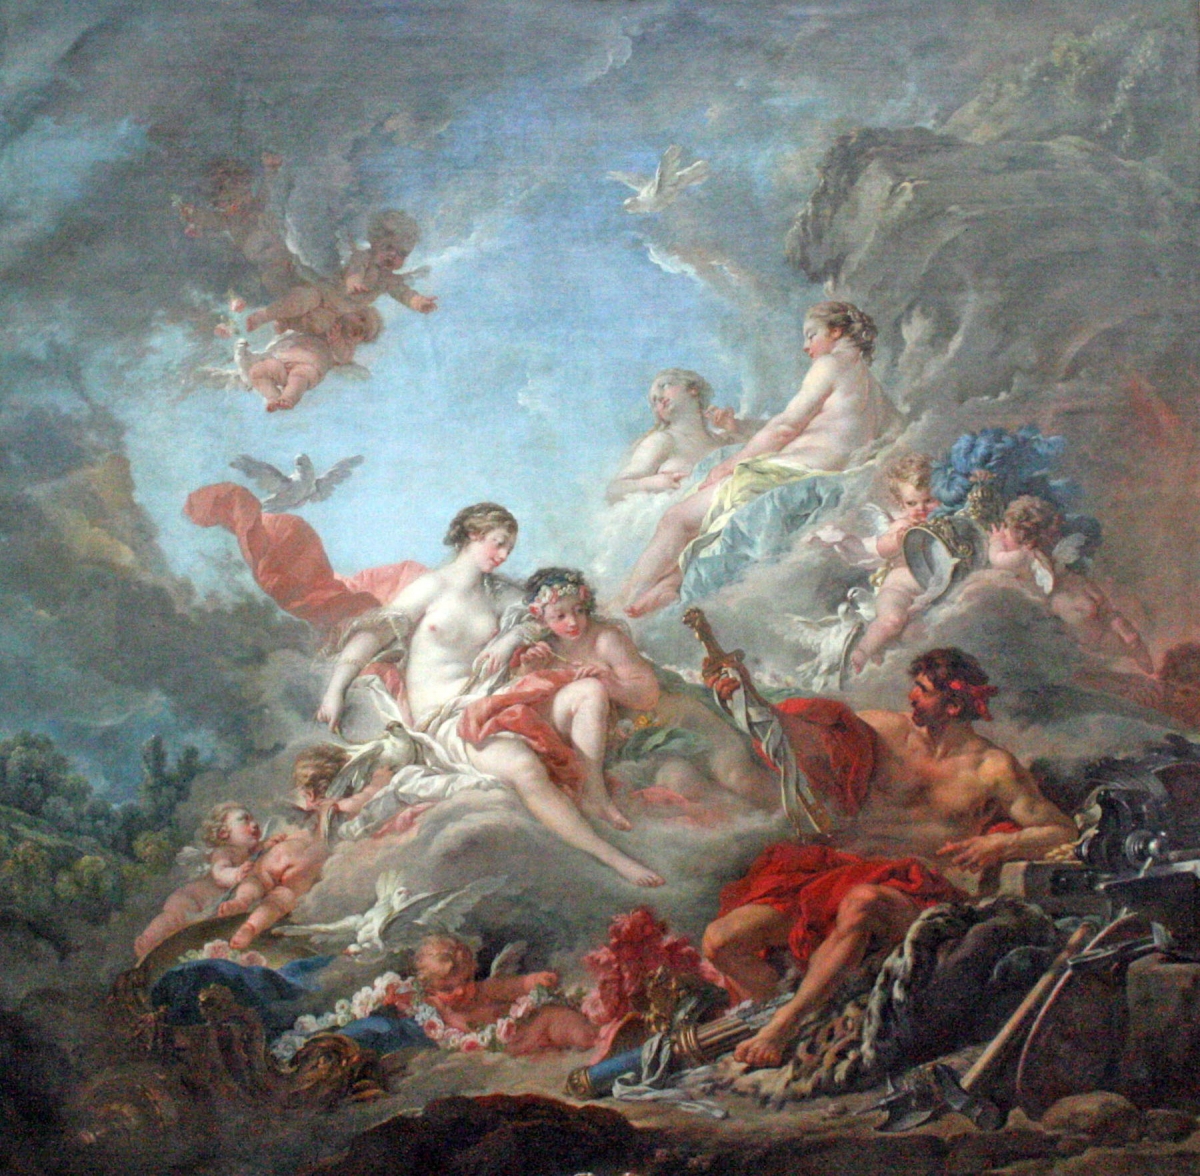 Les Forges de Vulcain tableau peint par François Boucher en 1757